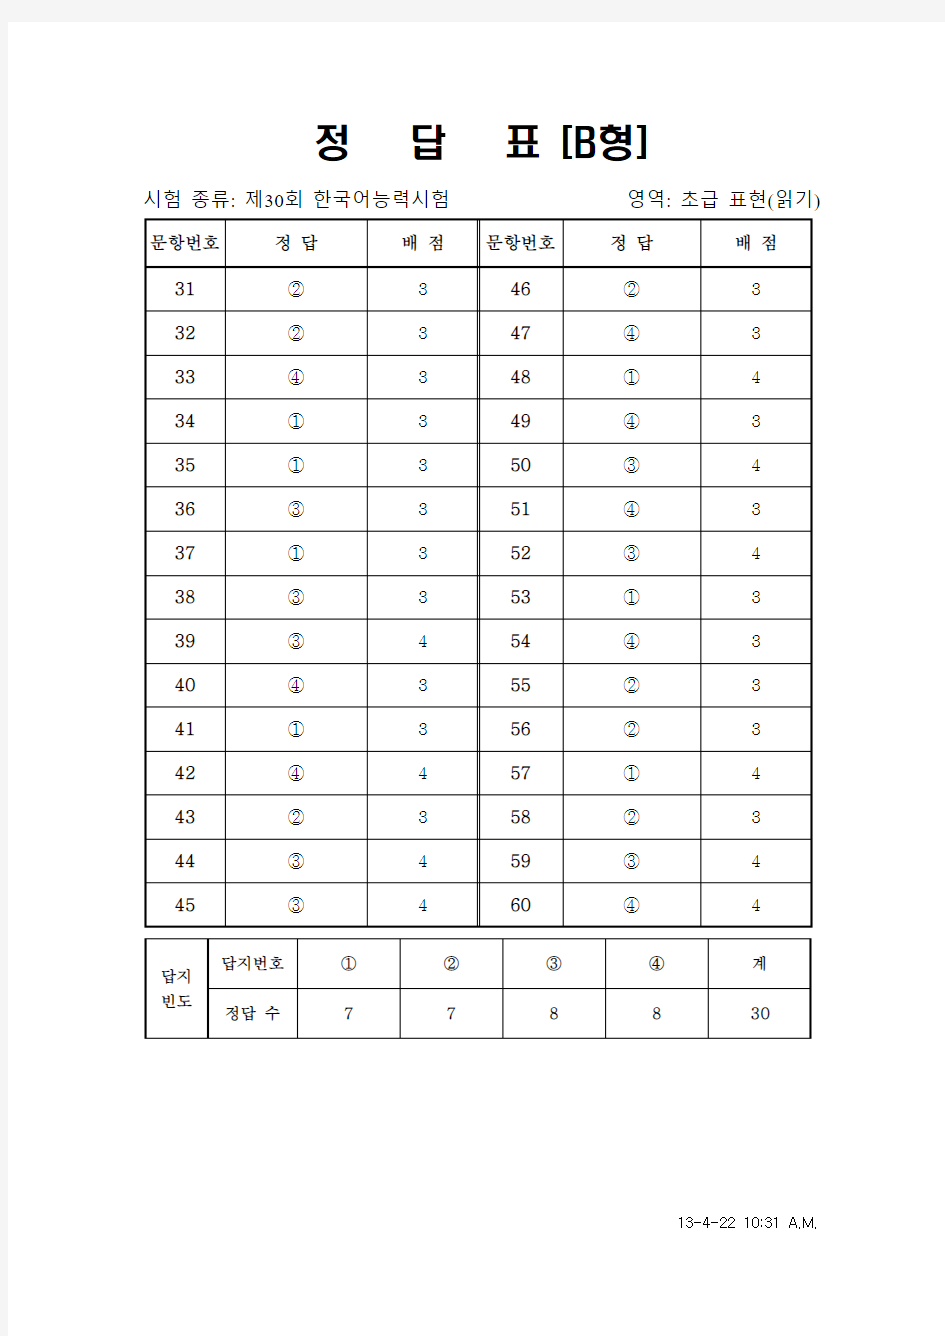 韩国语能力考试(TOPIK)真题资料【初级】30届初级阅读答案